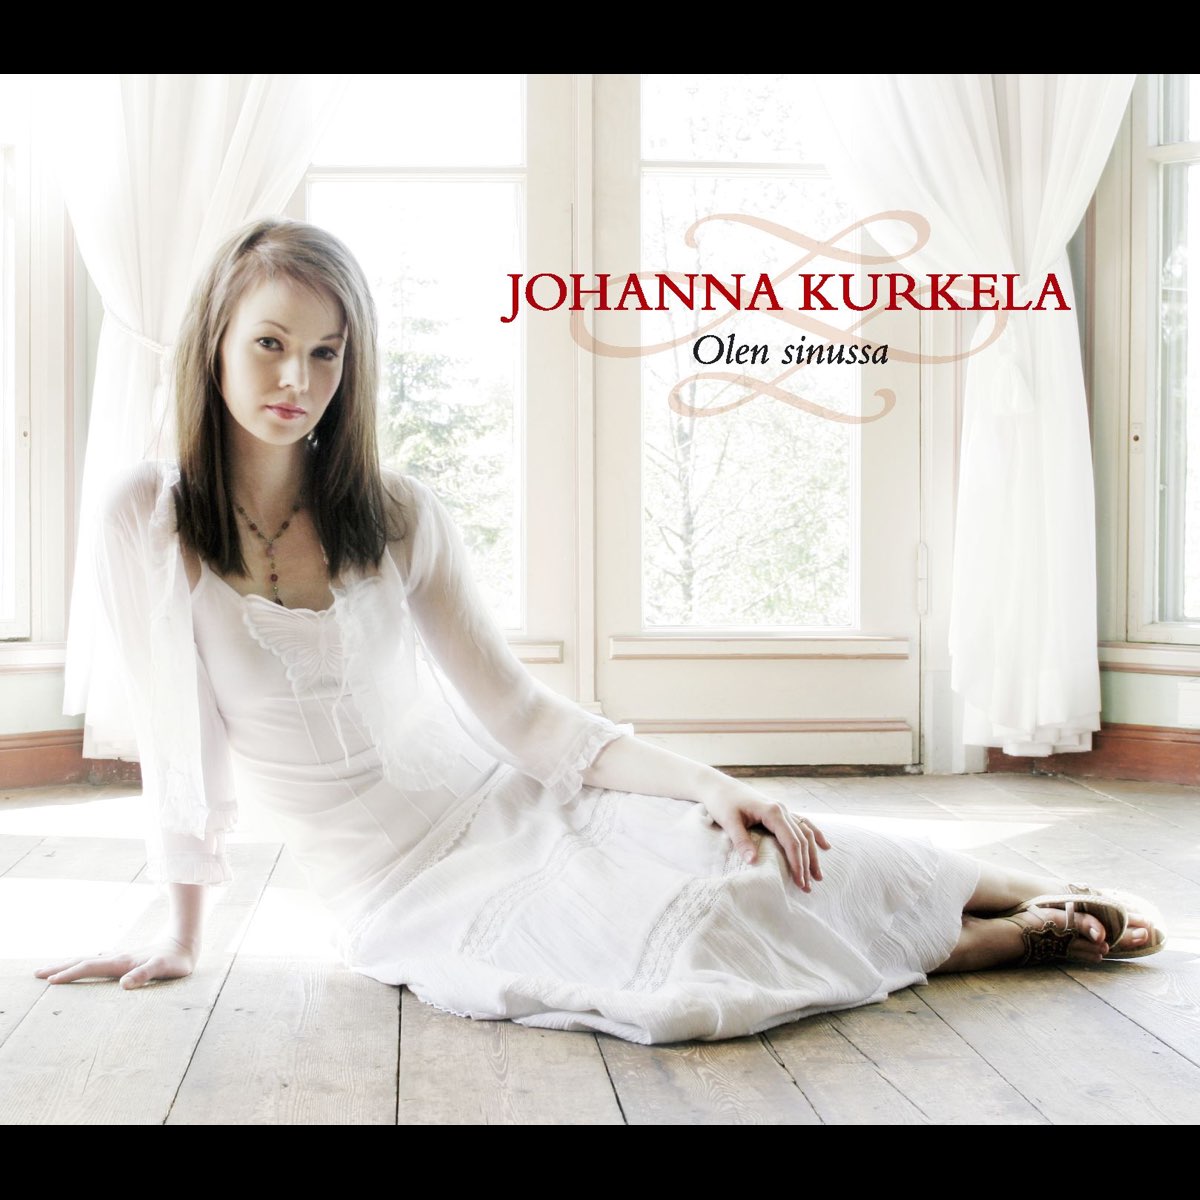 Olen Sinussa - Single - Album by Johanna Kurkela - Apple Music